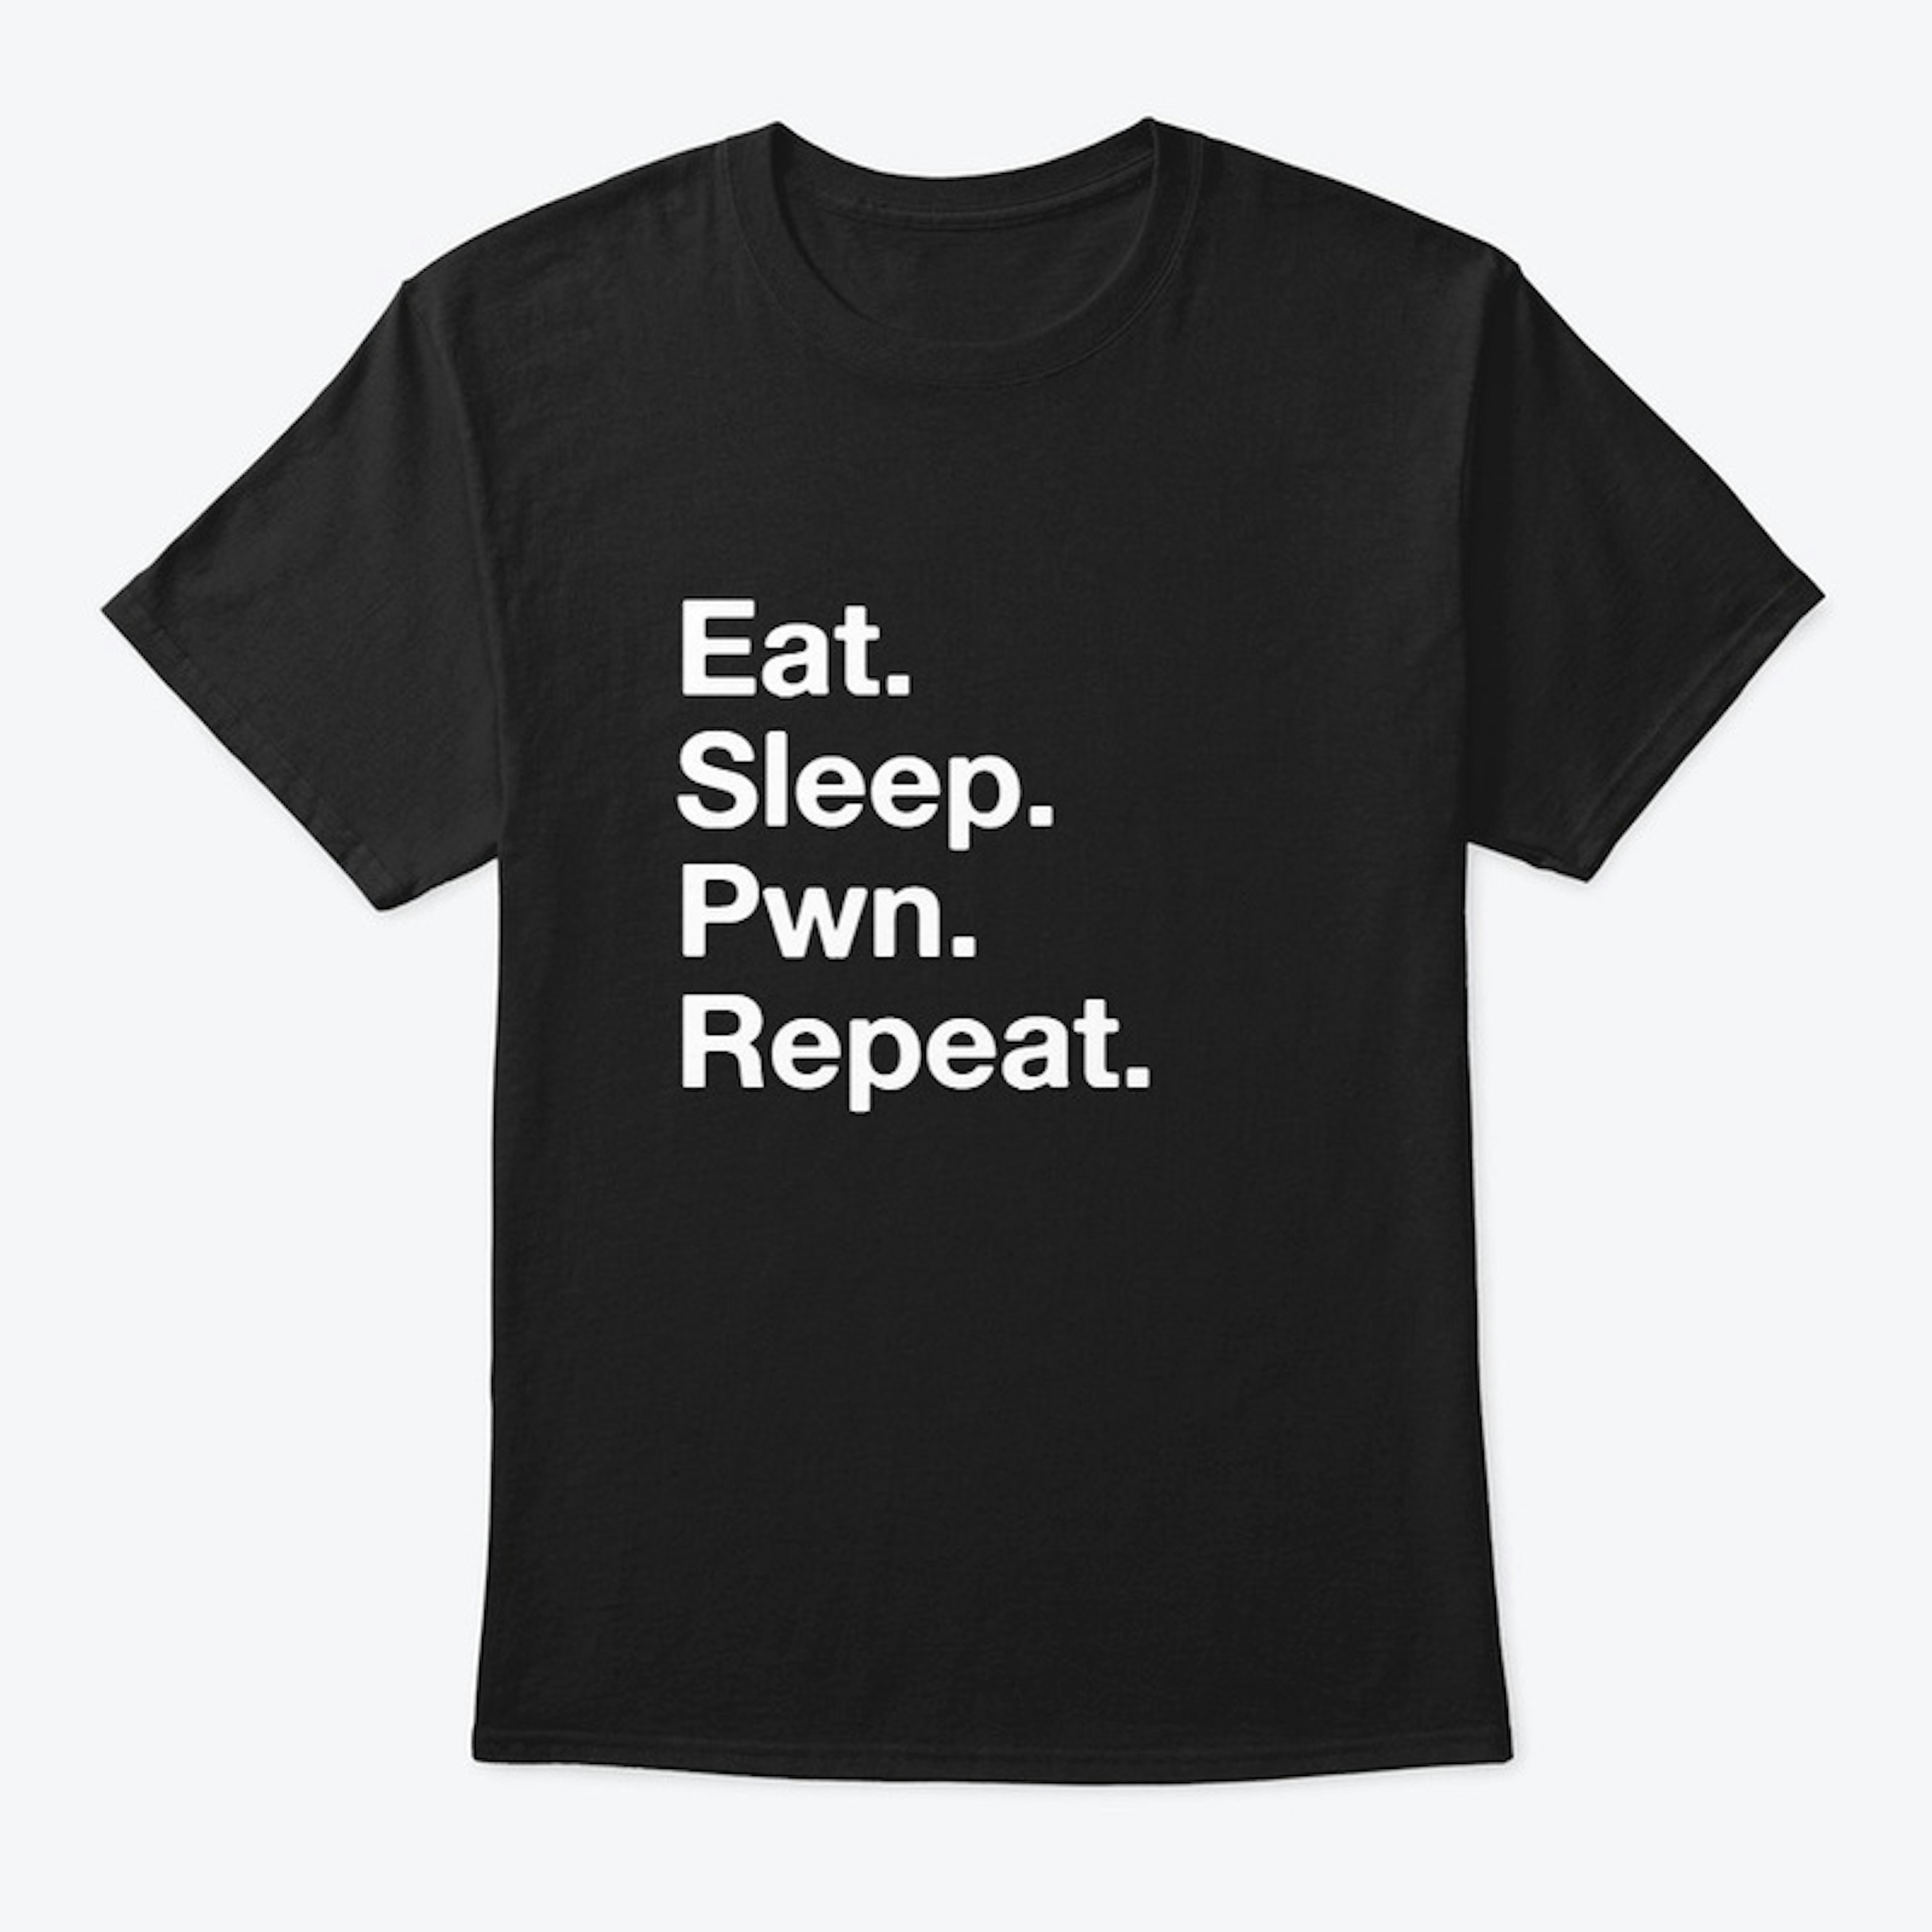 Cyber Security - Eat.Sleep.Pwn.Repeat.